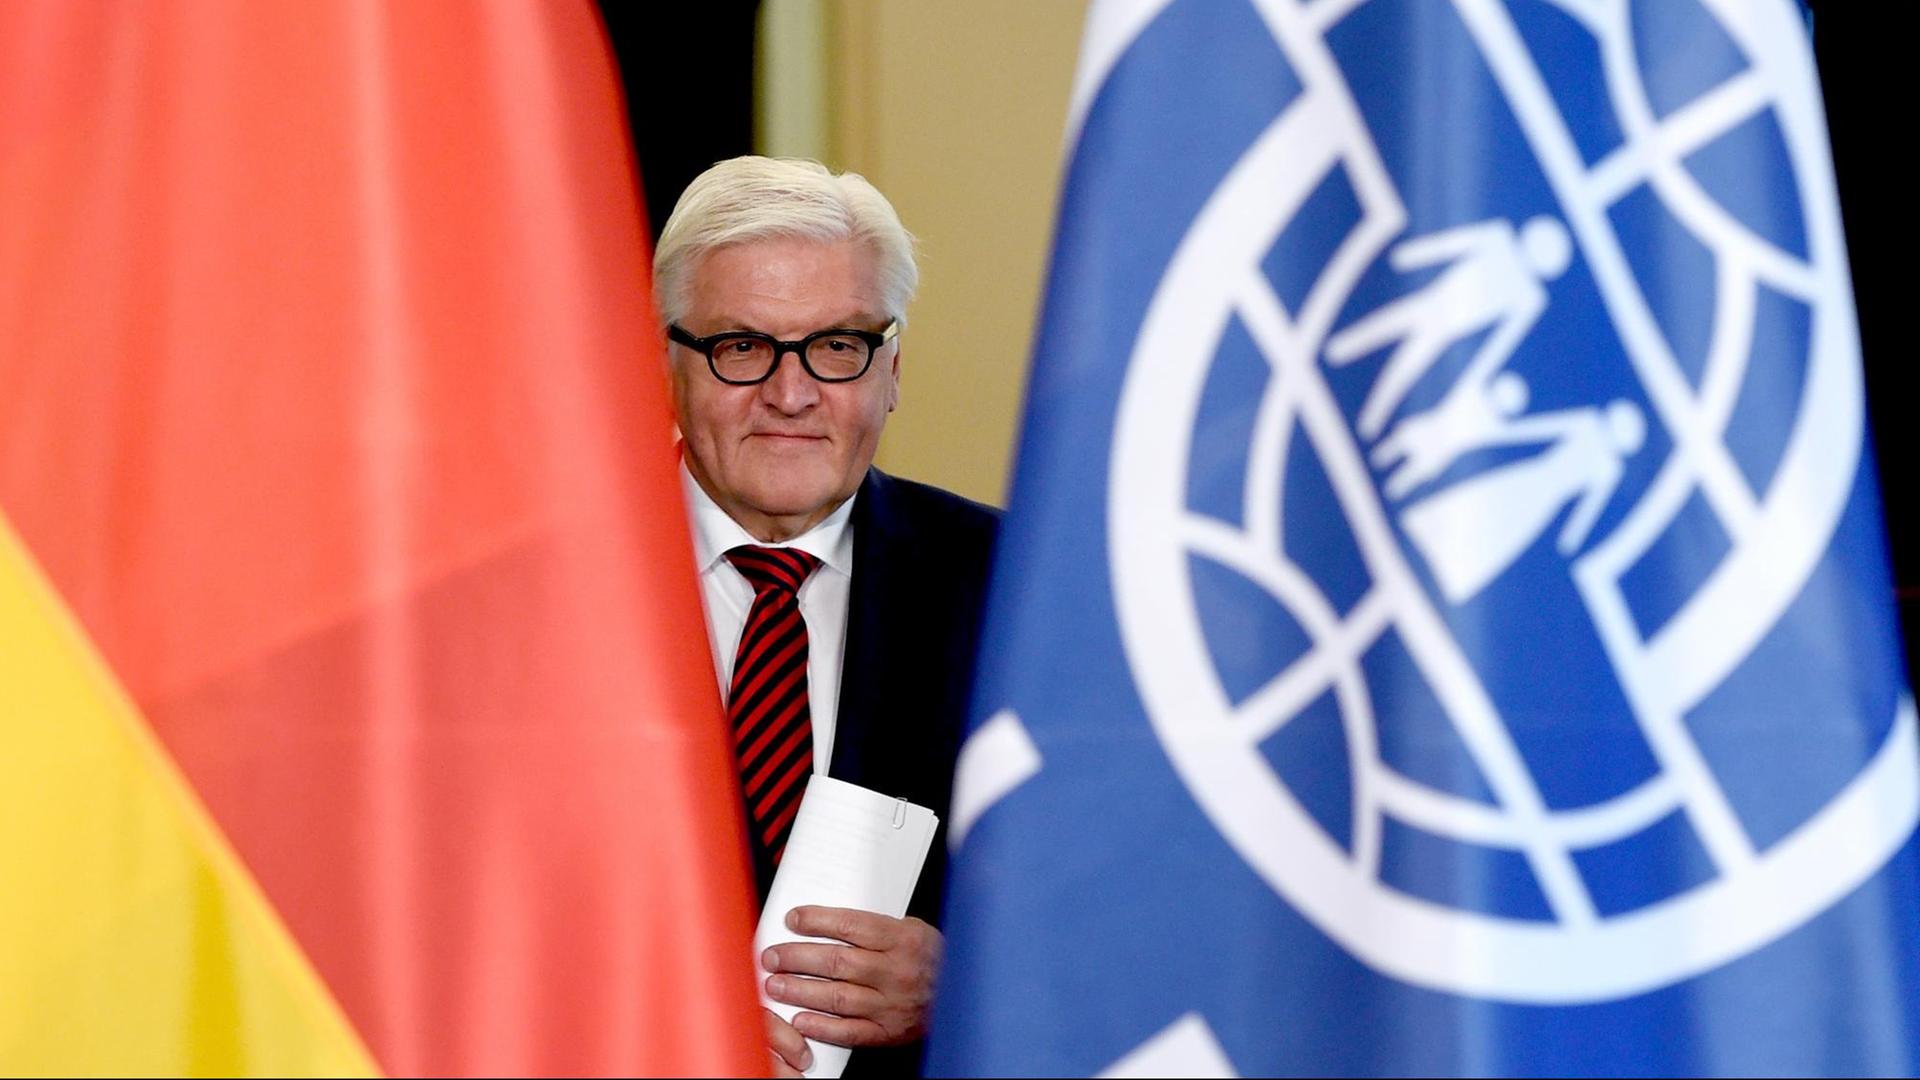 Frank-Walter Steinmeier zwischen zwei Flaggen der Bundesrepublik Deutschland und der Internationalen Organisation für Migration